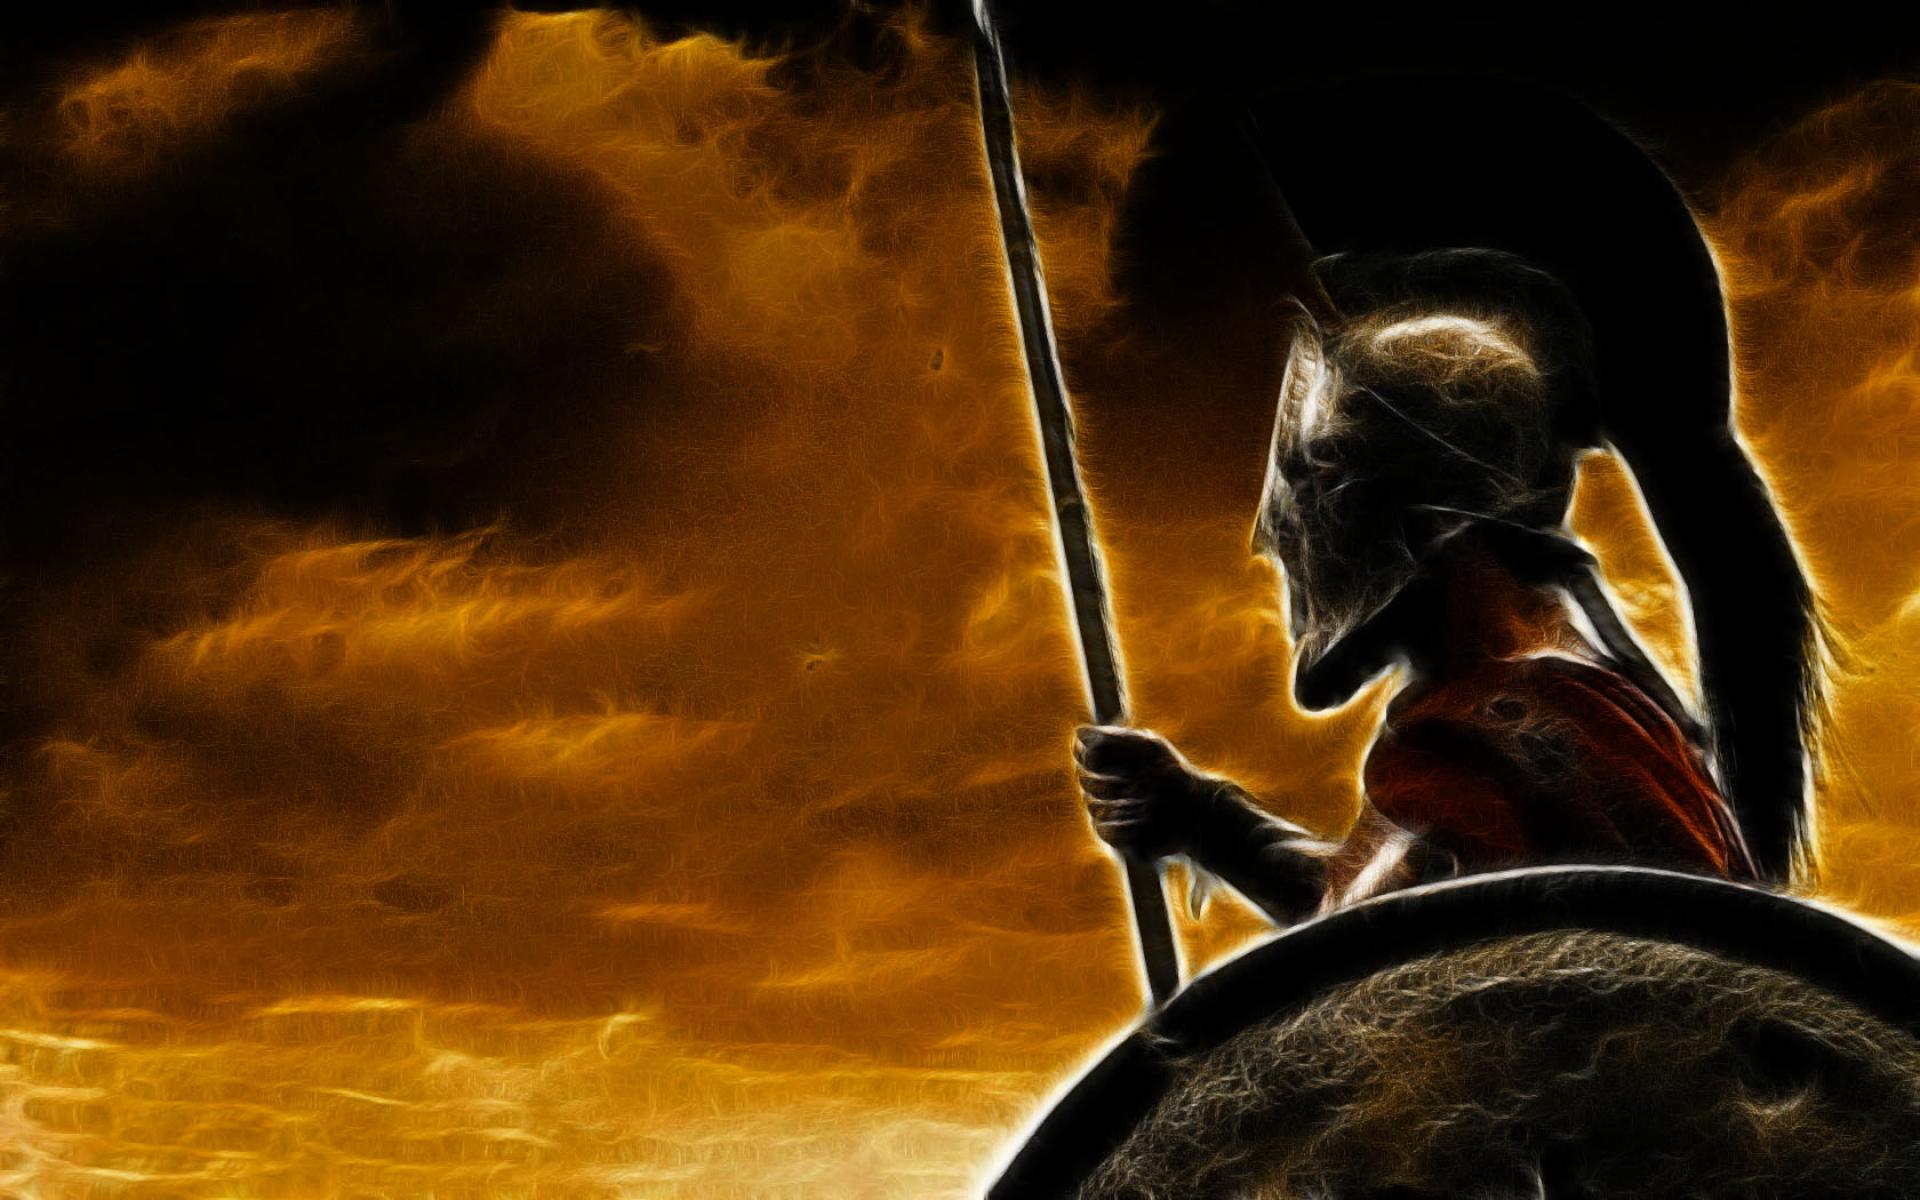 300 movie sparta shield spears helmets skyscapes 9RKc